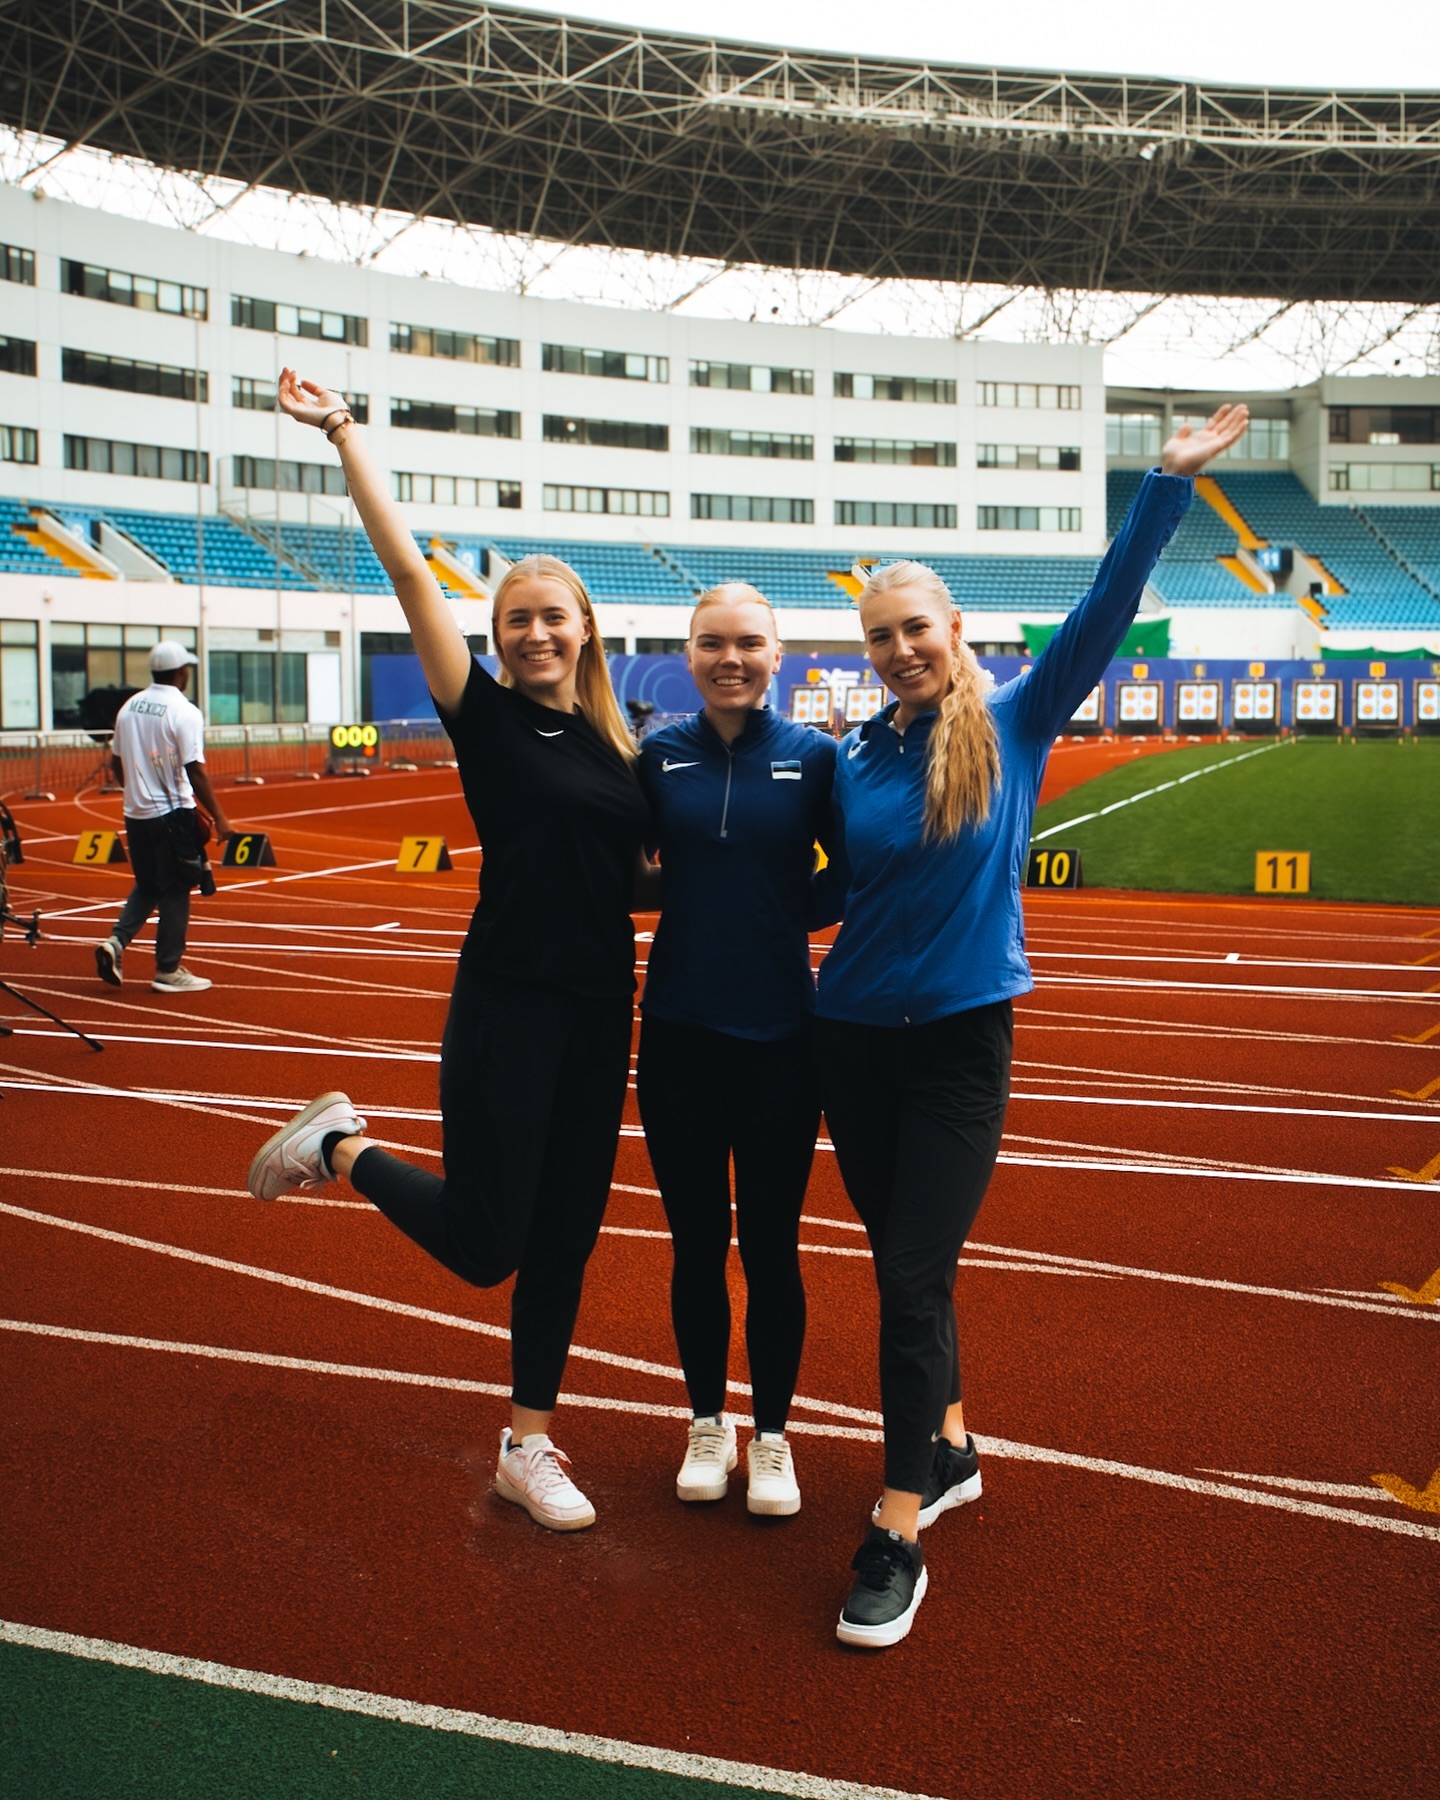 Eesti plokkvibukoondis alustas maailmakarika esimest etappi tugevate tulemustega!